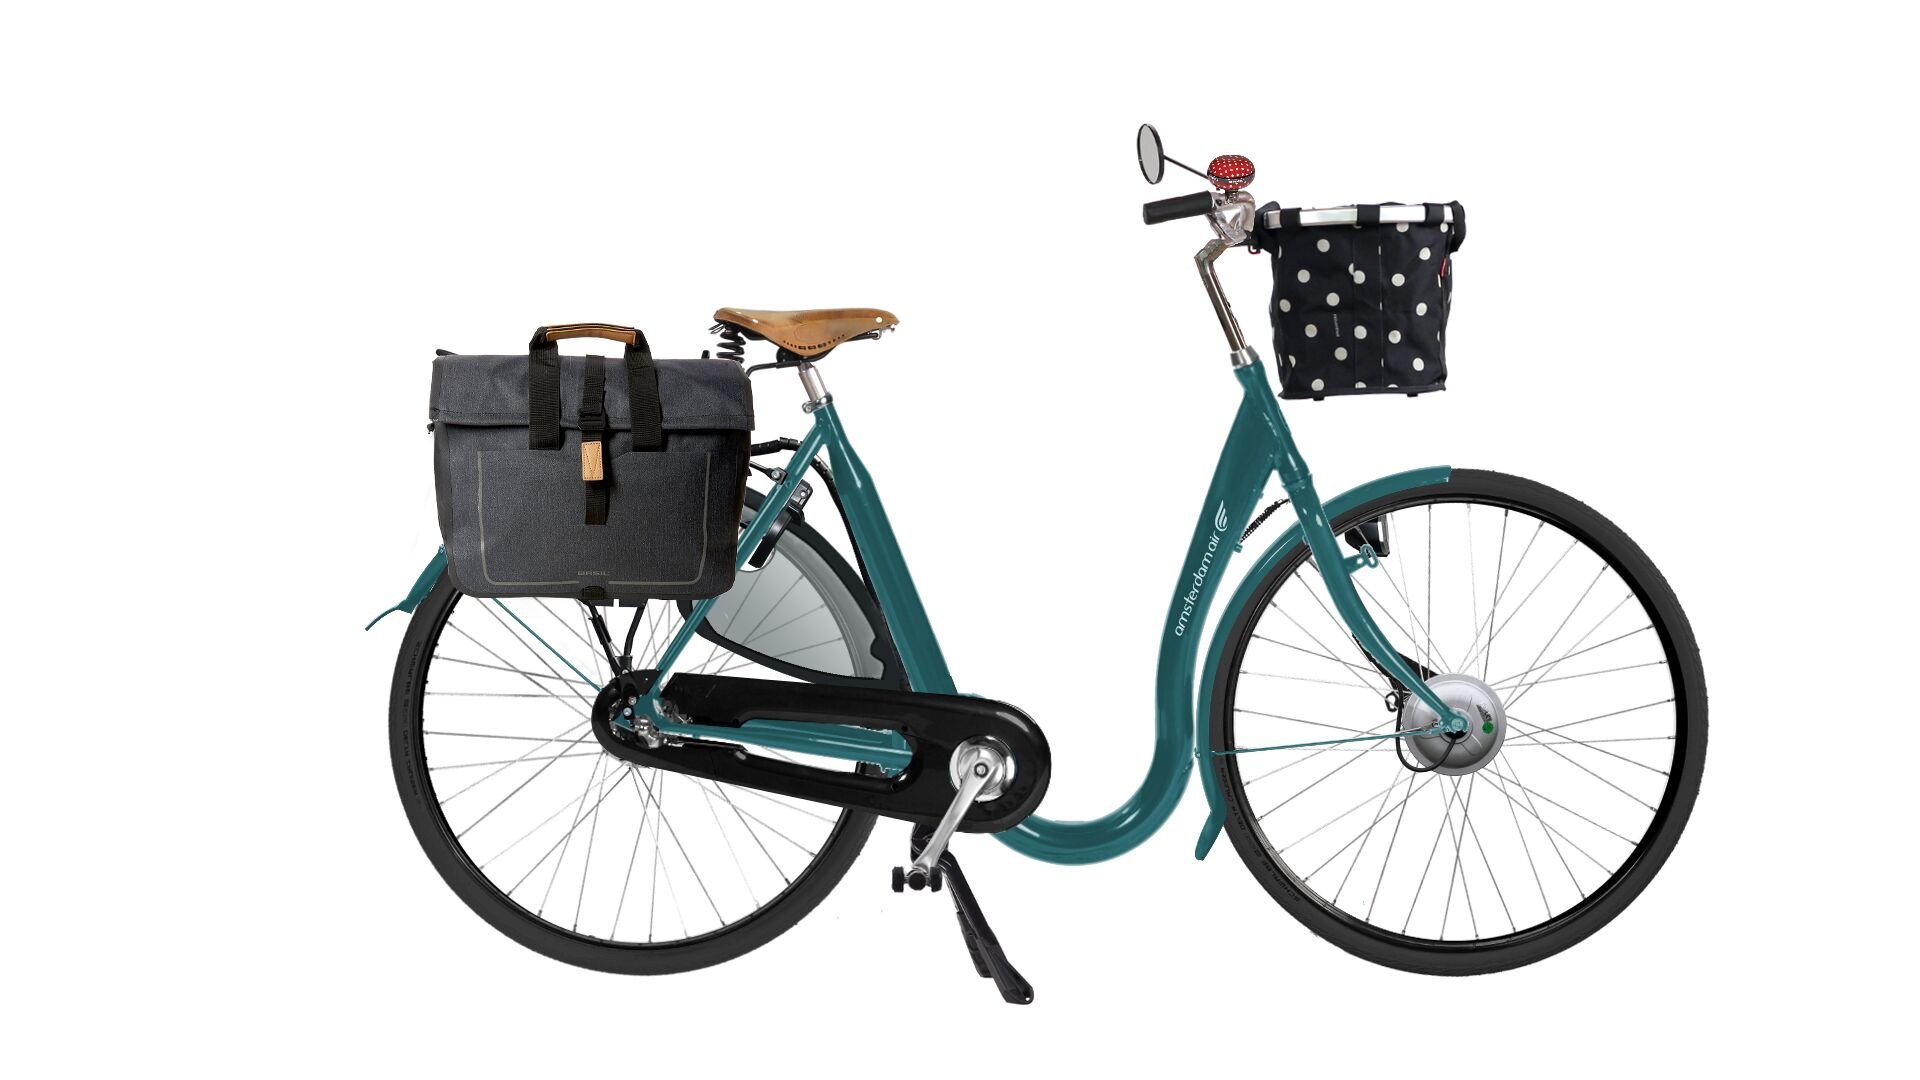 Les accessoires complémentaires pour équiper votre vélo